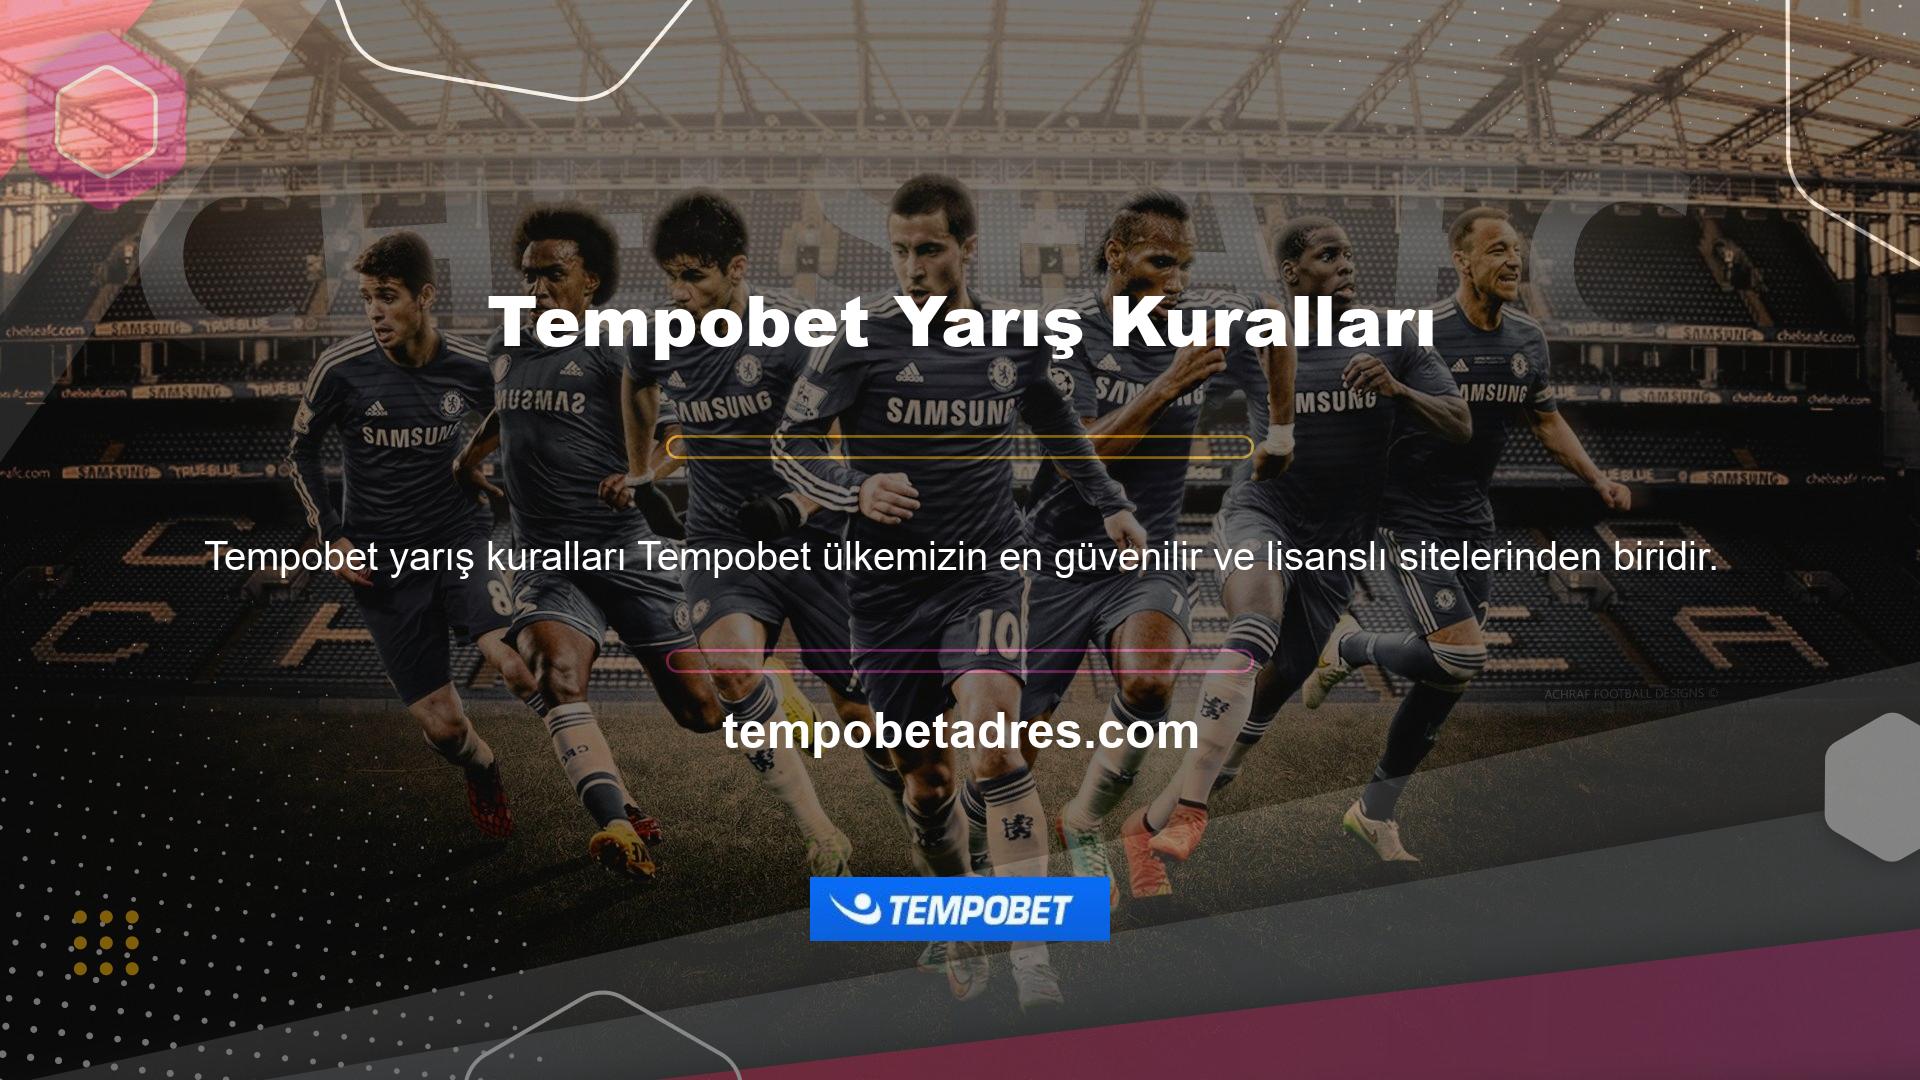 Yetkili site olarak tanımlanan Tempobet, resmî olarak tescilli casino markası haline gelen Tempobet ile çalışmaktadır